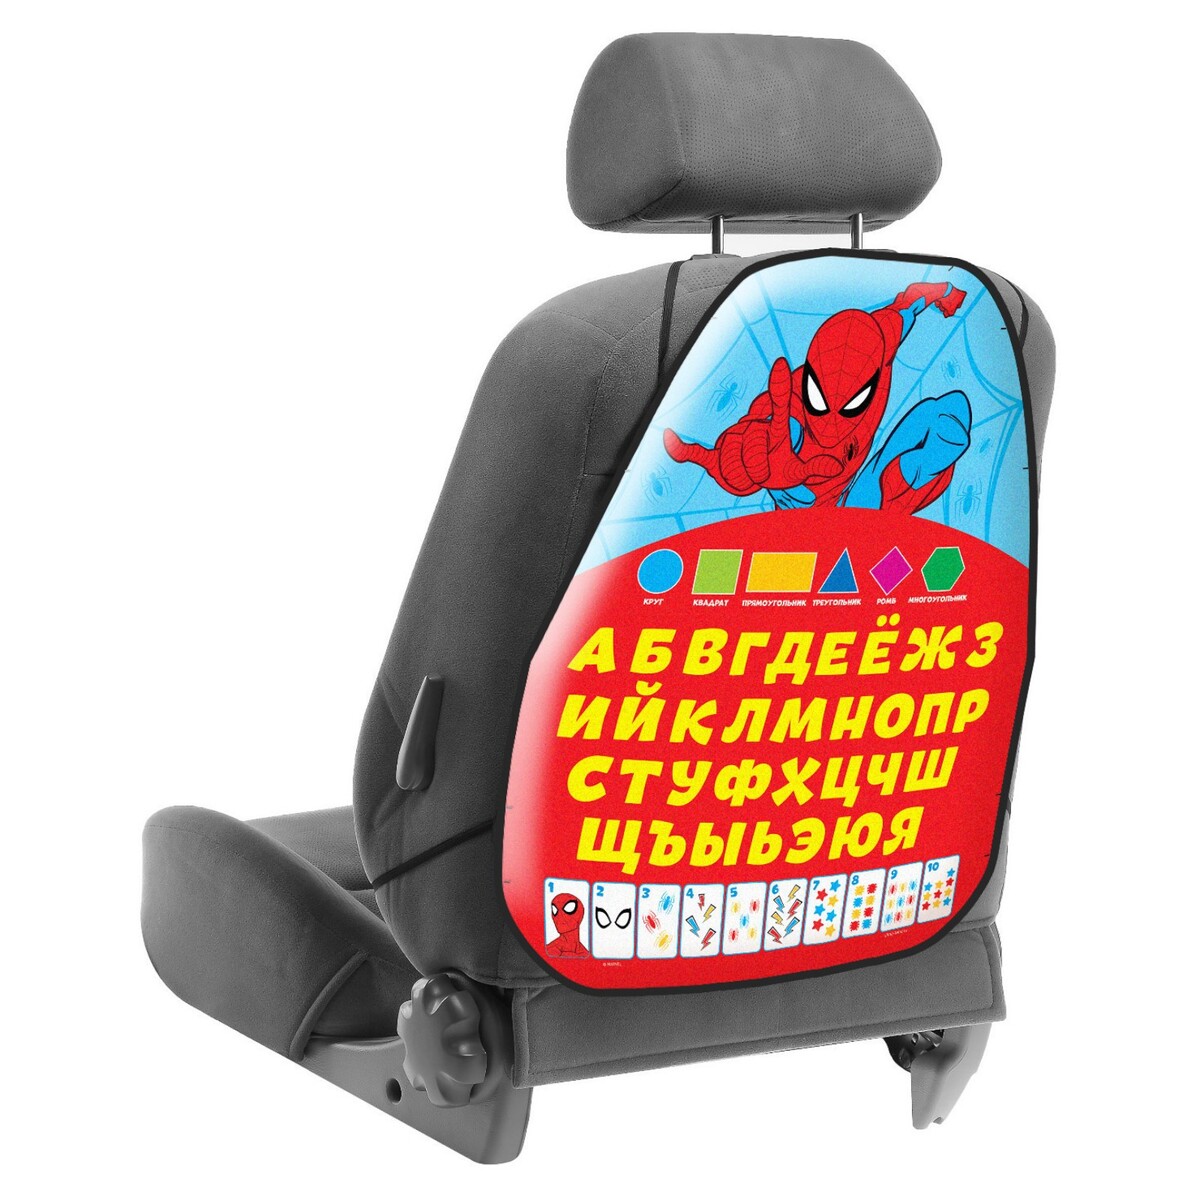 Незапинайка на автомобильное кресло, массажное кресло victoryfit m100